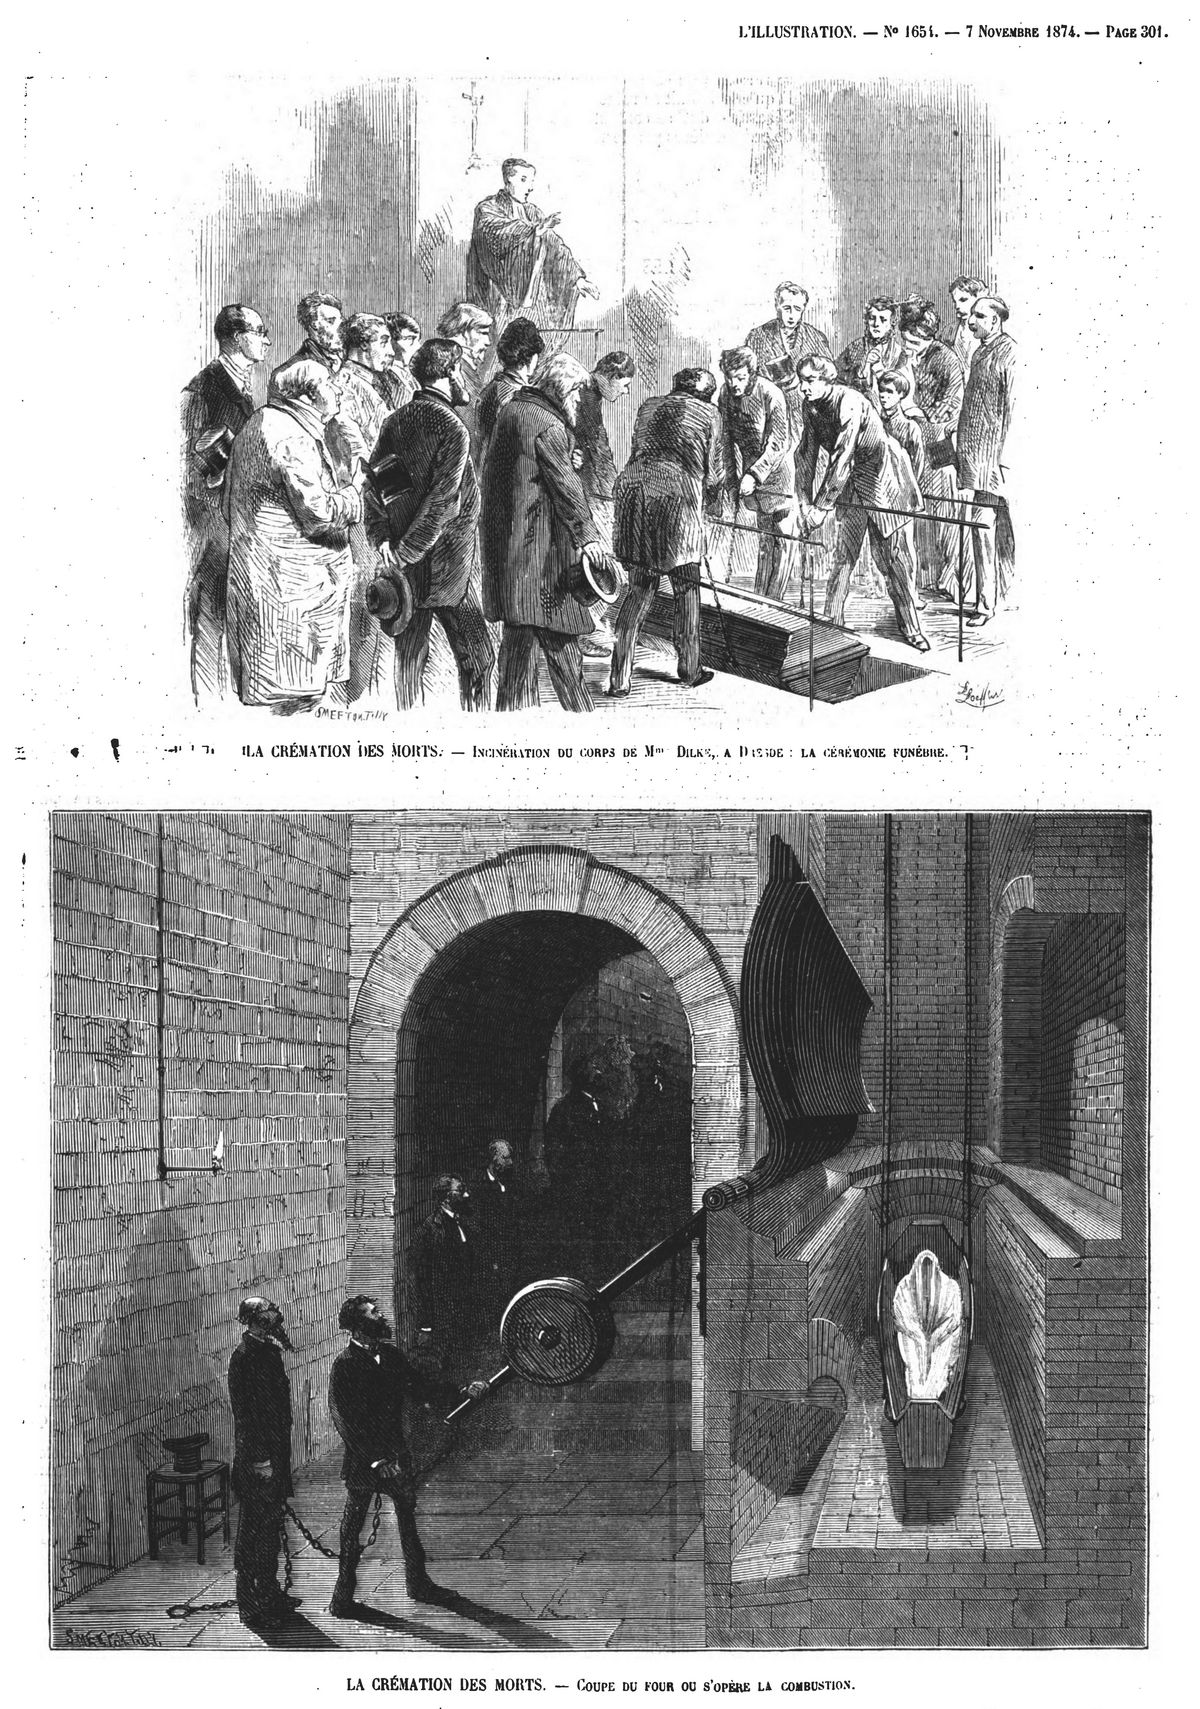 La crémation des morts ; incinération du corps de M. Dilke, à Dresde: la cérémonie funèbre. Gravure 1874